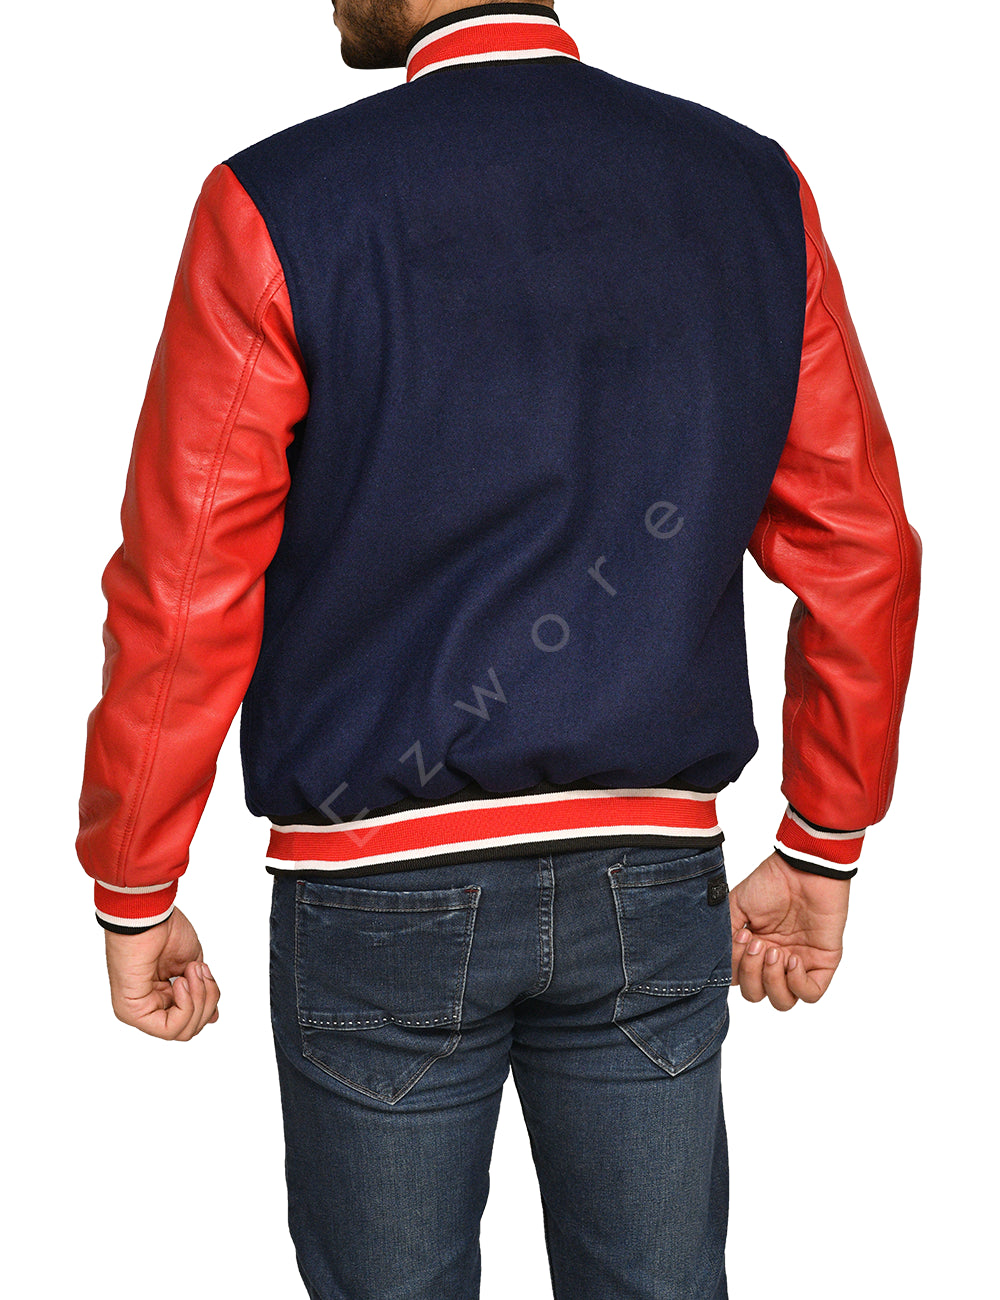 Mens Baseball Red and Blue Varsity Jacket